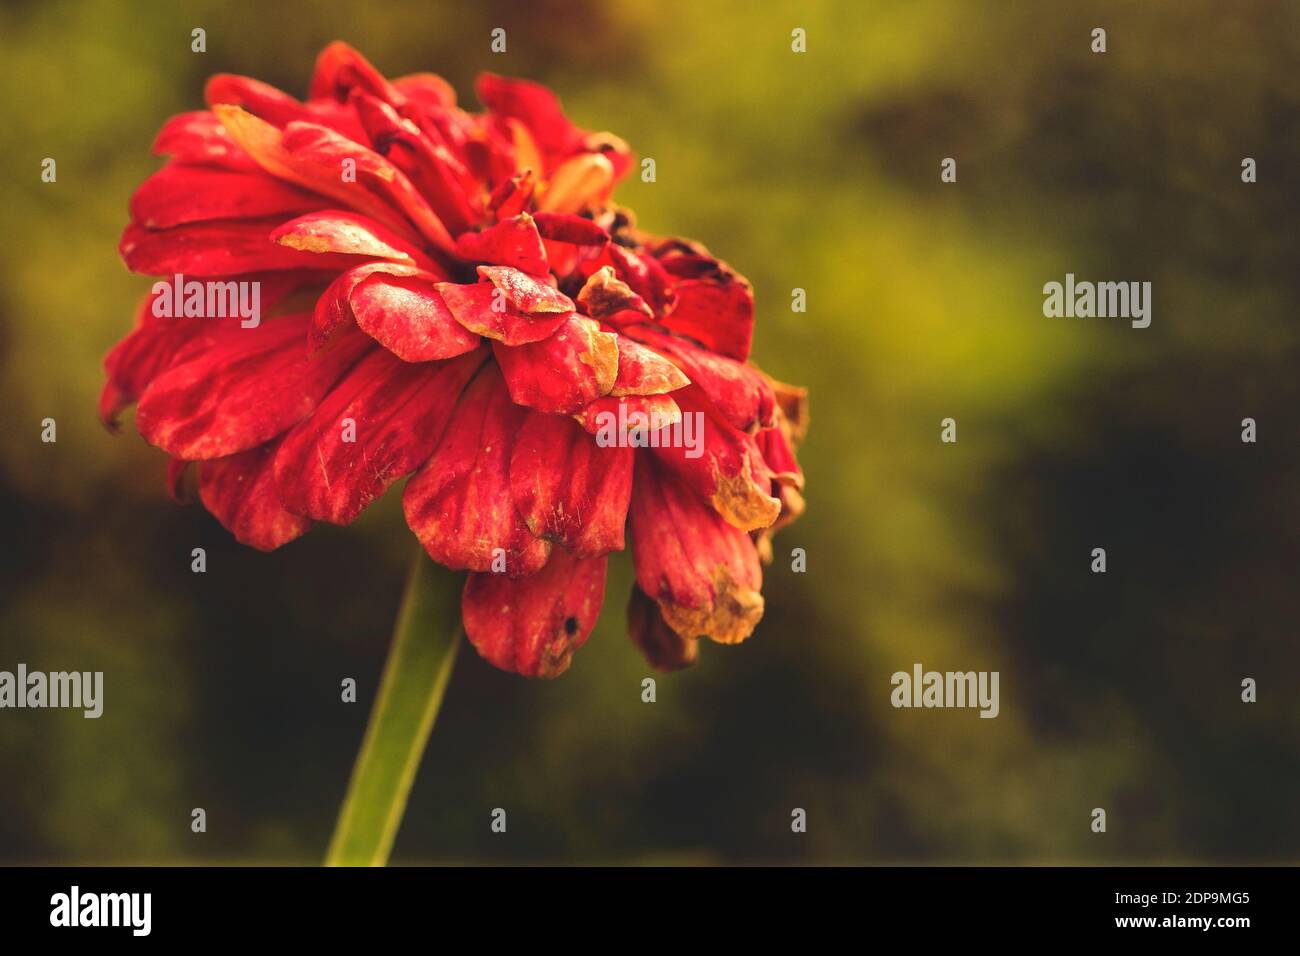 Zinnia rossa fiore maturo su sfondo sfocato Foto Stock